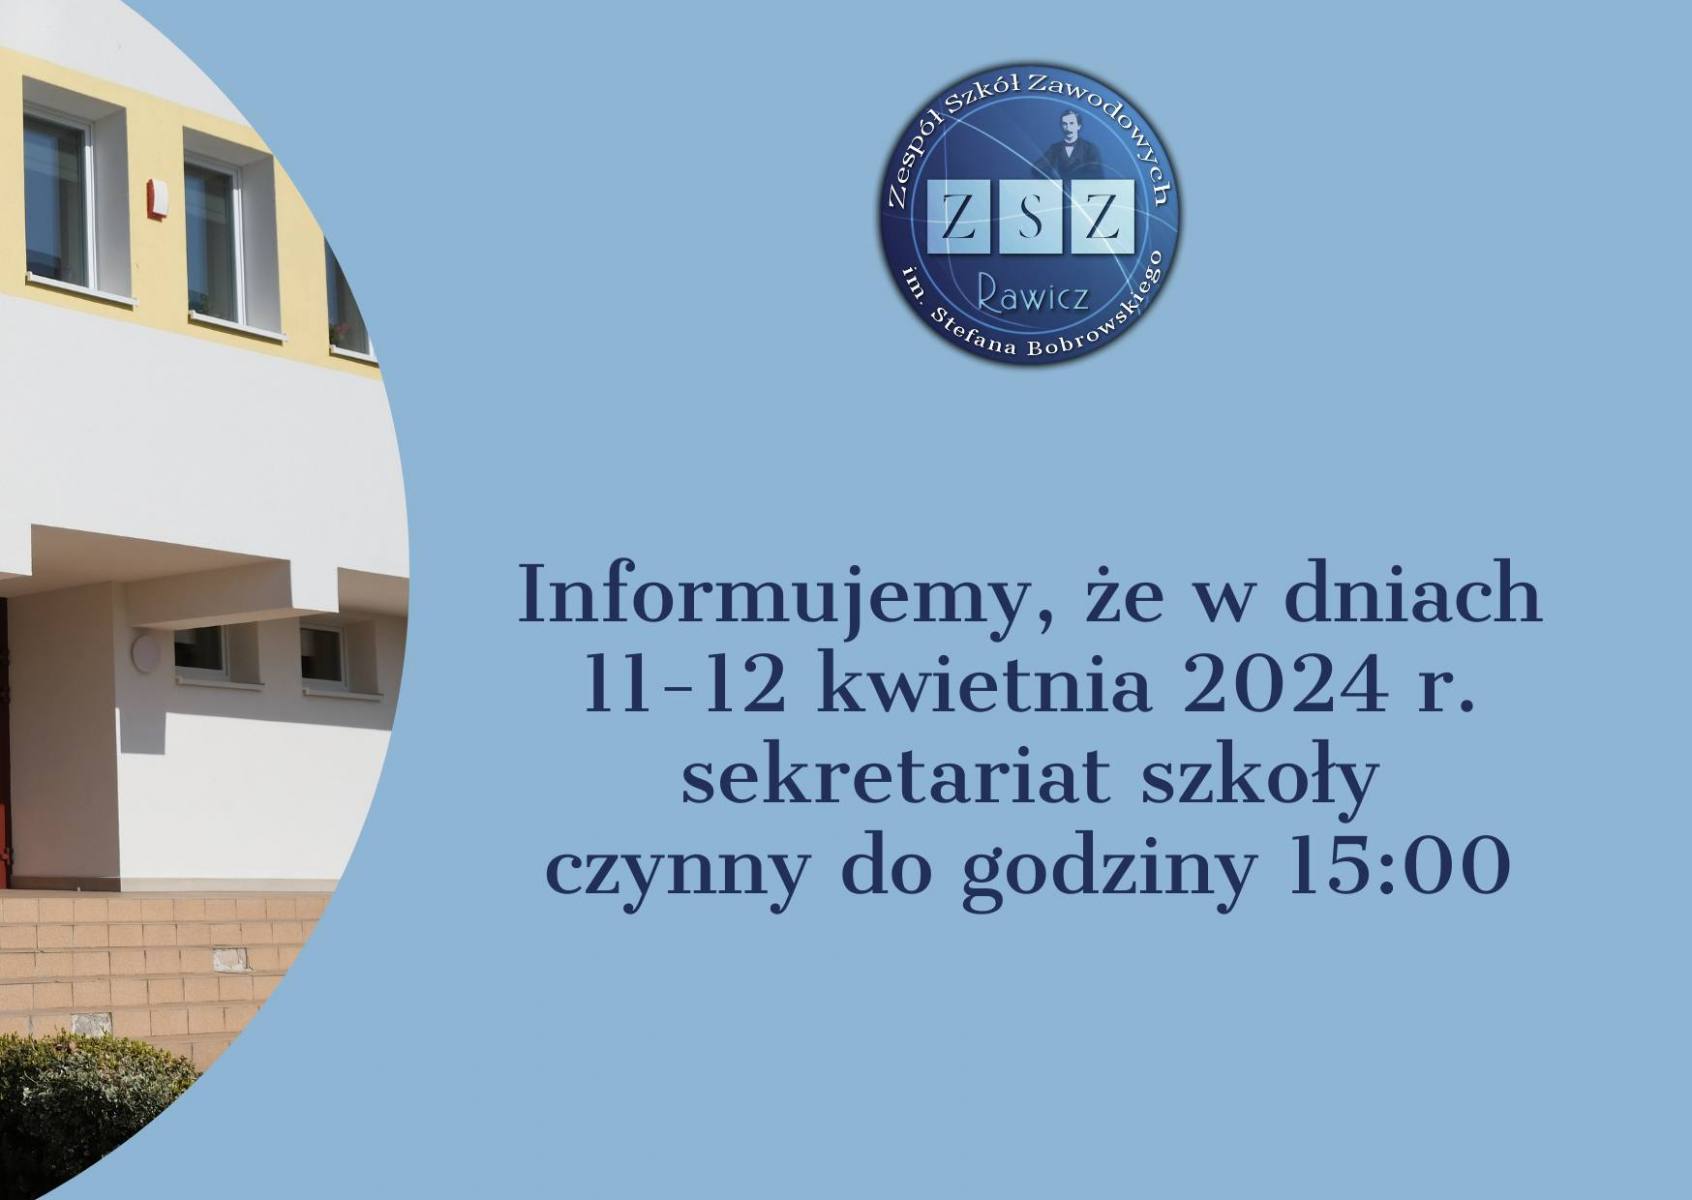 Informujemy, że w dniach 11-12 kwietnia 2024 r. sekretariat szkoły czynny do godziny 15:00